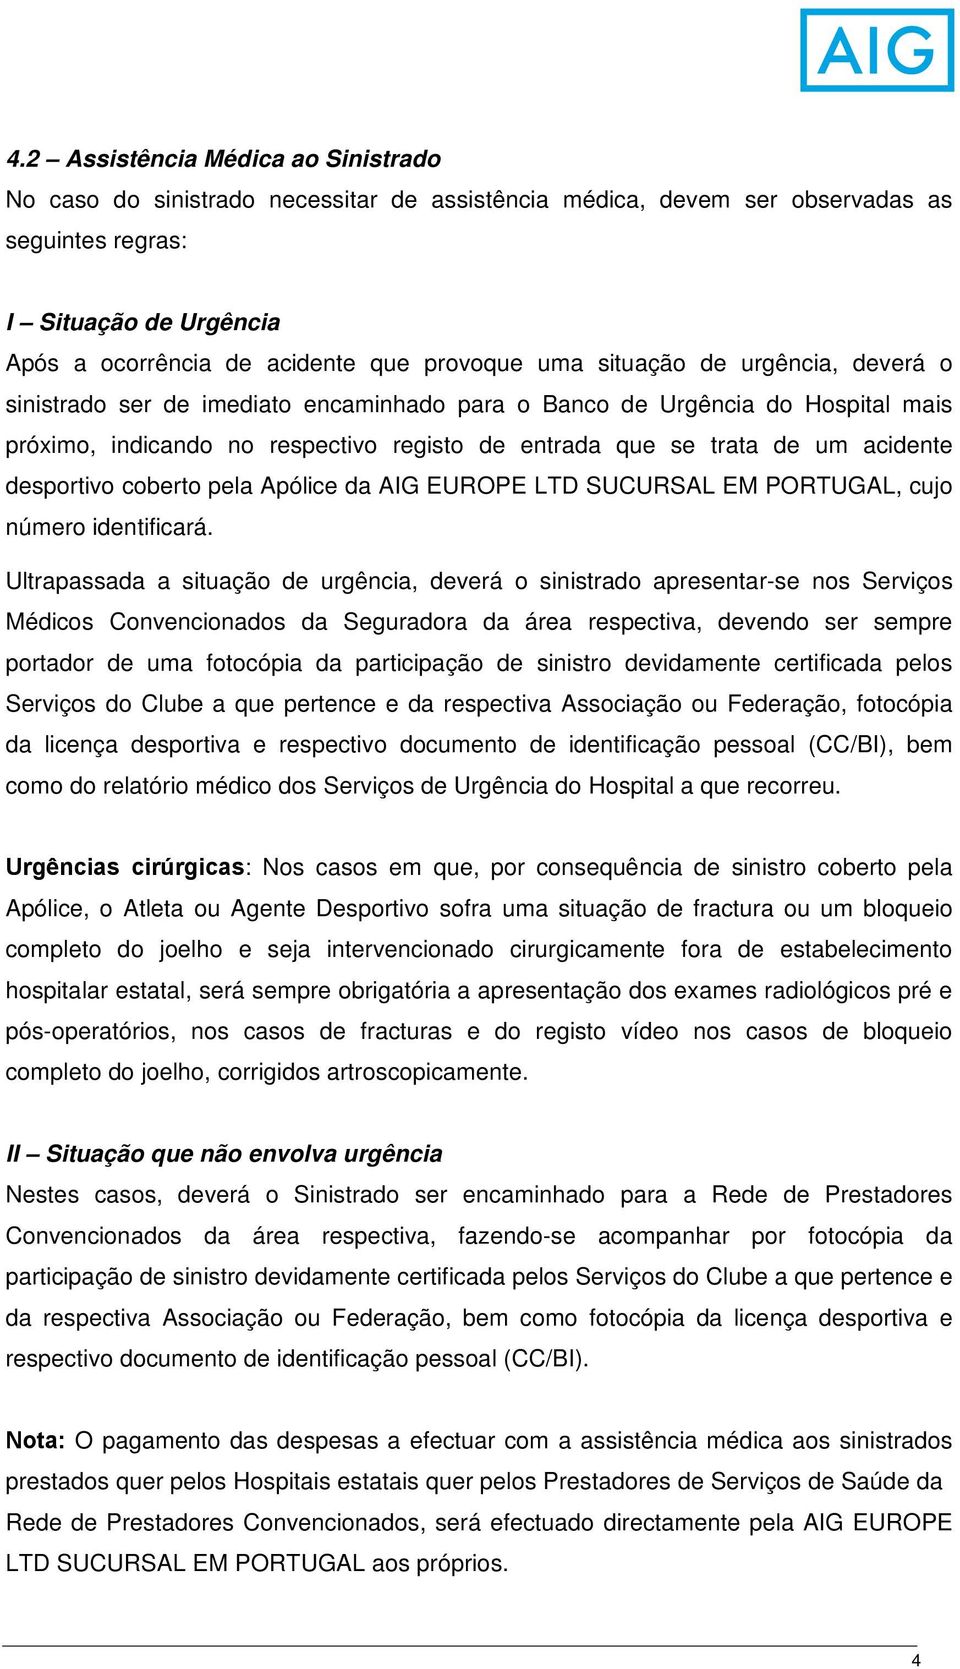 acidente desportivo coberto pela Apólice da AIG EUROPE LTD SUCURSAL EM PORTUGAL, cujo número identificará.